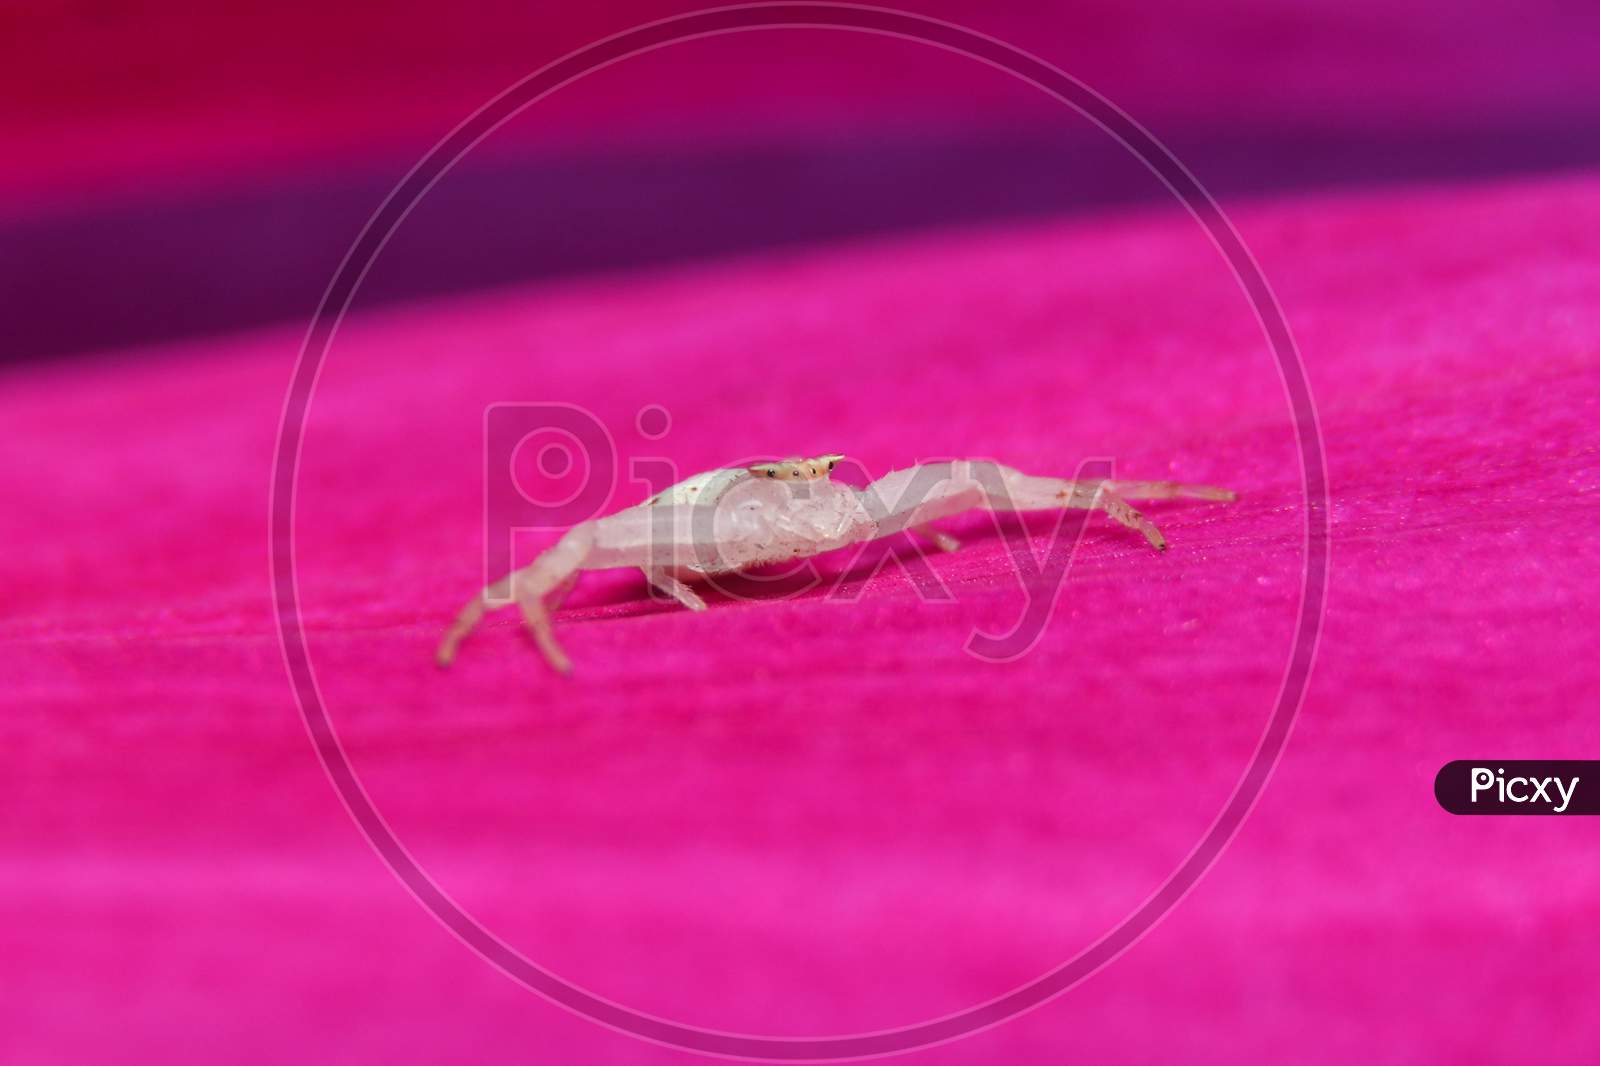 White Crab Spider On Pink Flower